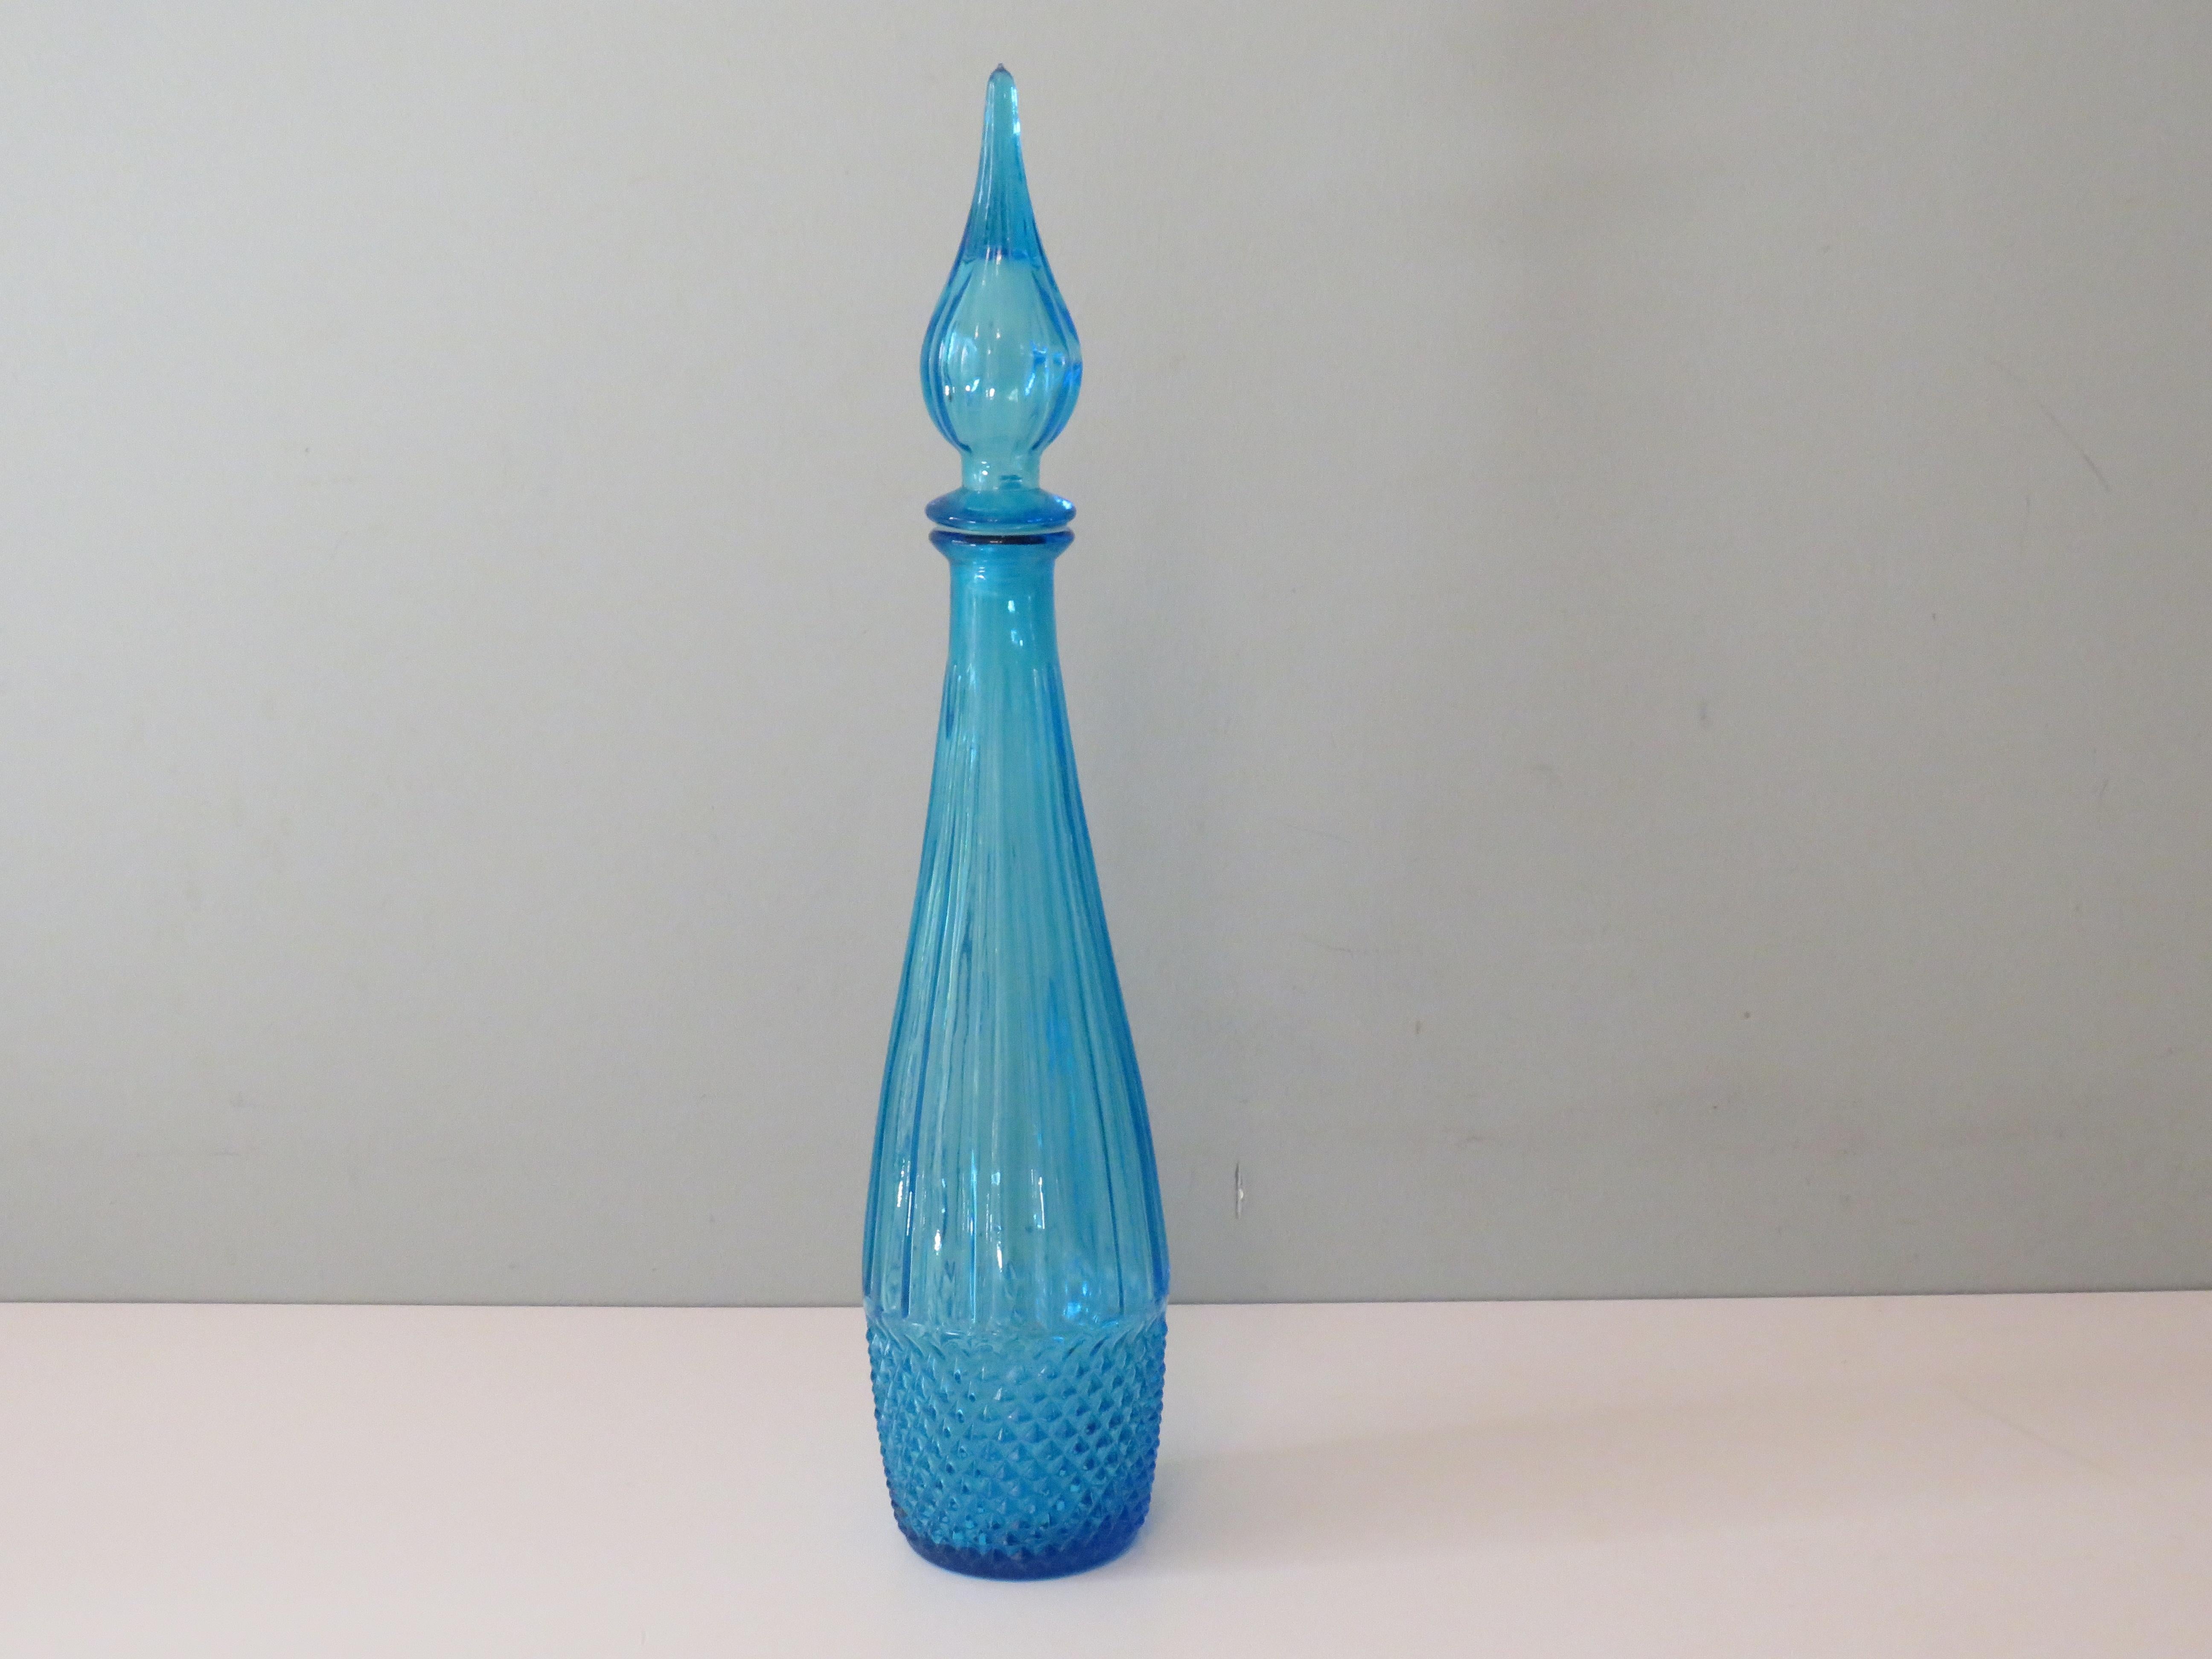 Blaue Empoli-Flasche mit Stopfen.
Maße: Höhe: 43 cm
Durchmesser unten: 7 cm
Die Flasche ist etikettiert und in gutem Zustand.